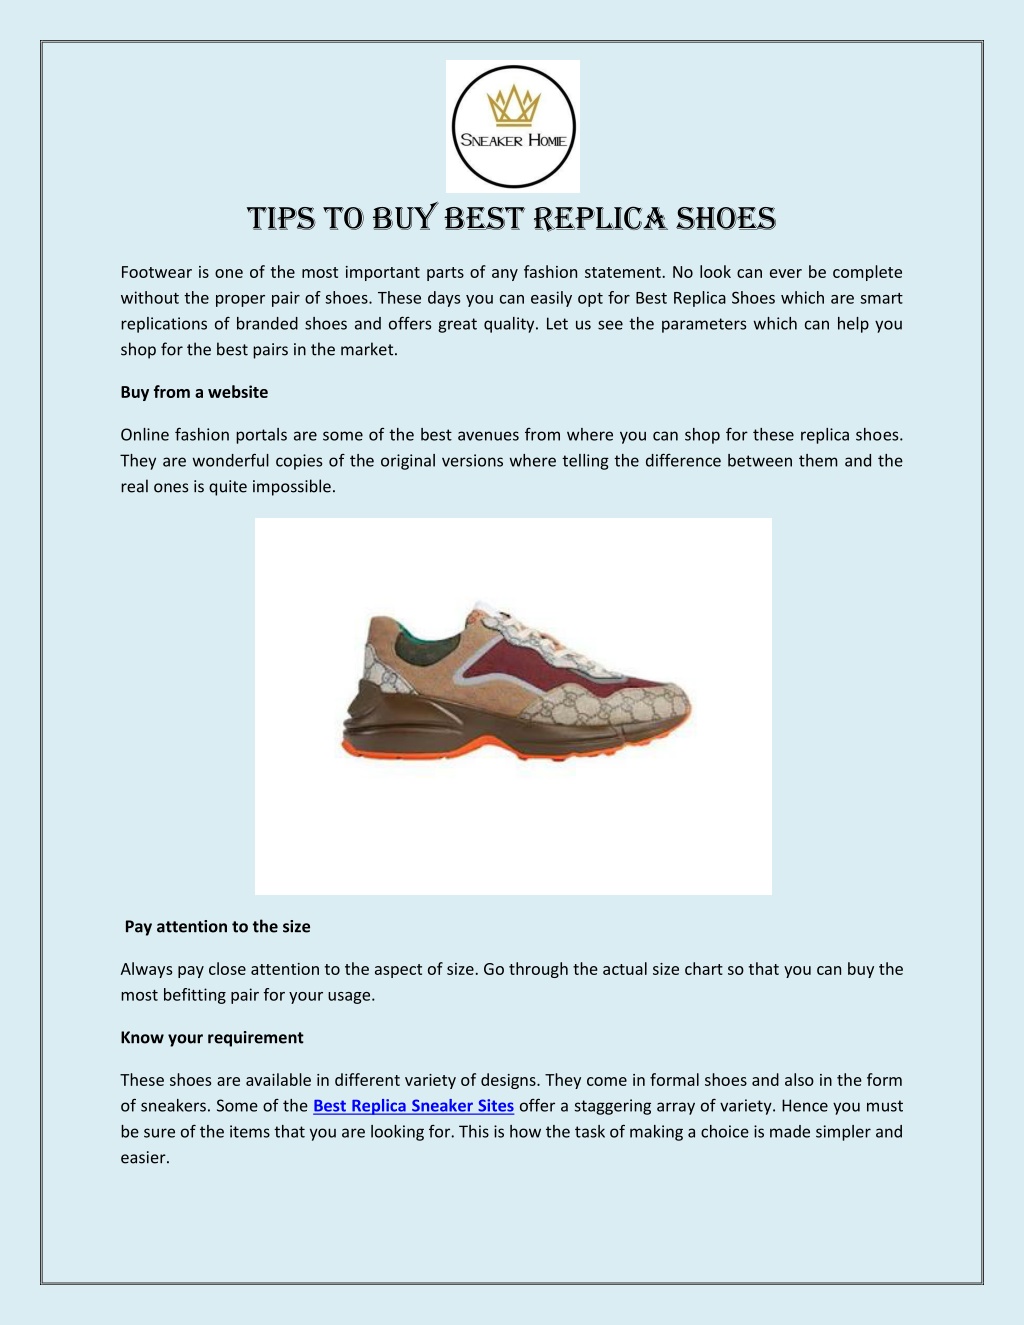 Best Replica Shoes, Sneaker Sites, Clothing, Accessories | SneakerHomie